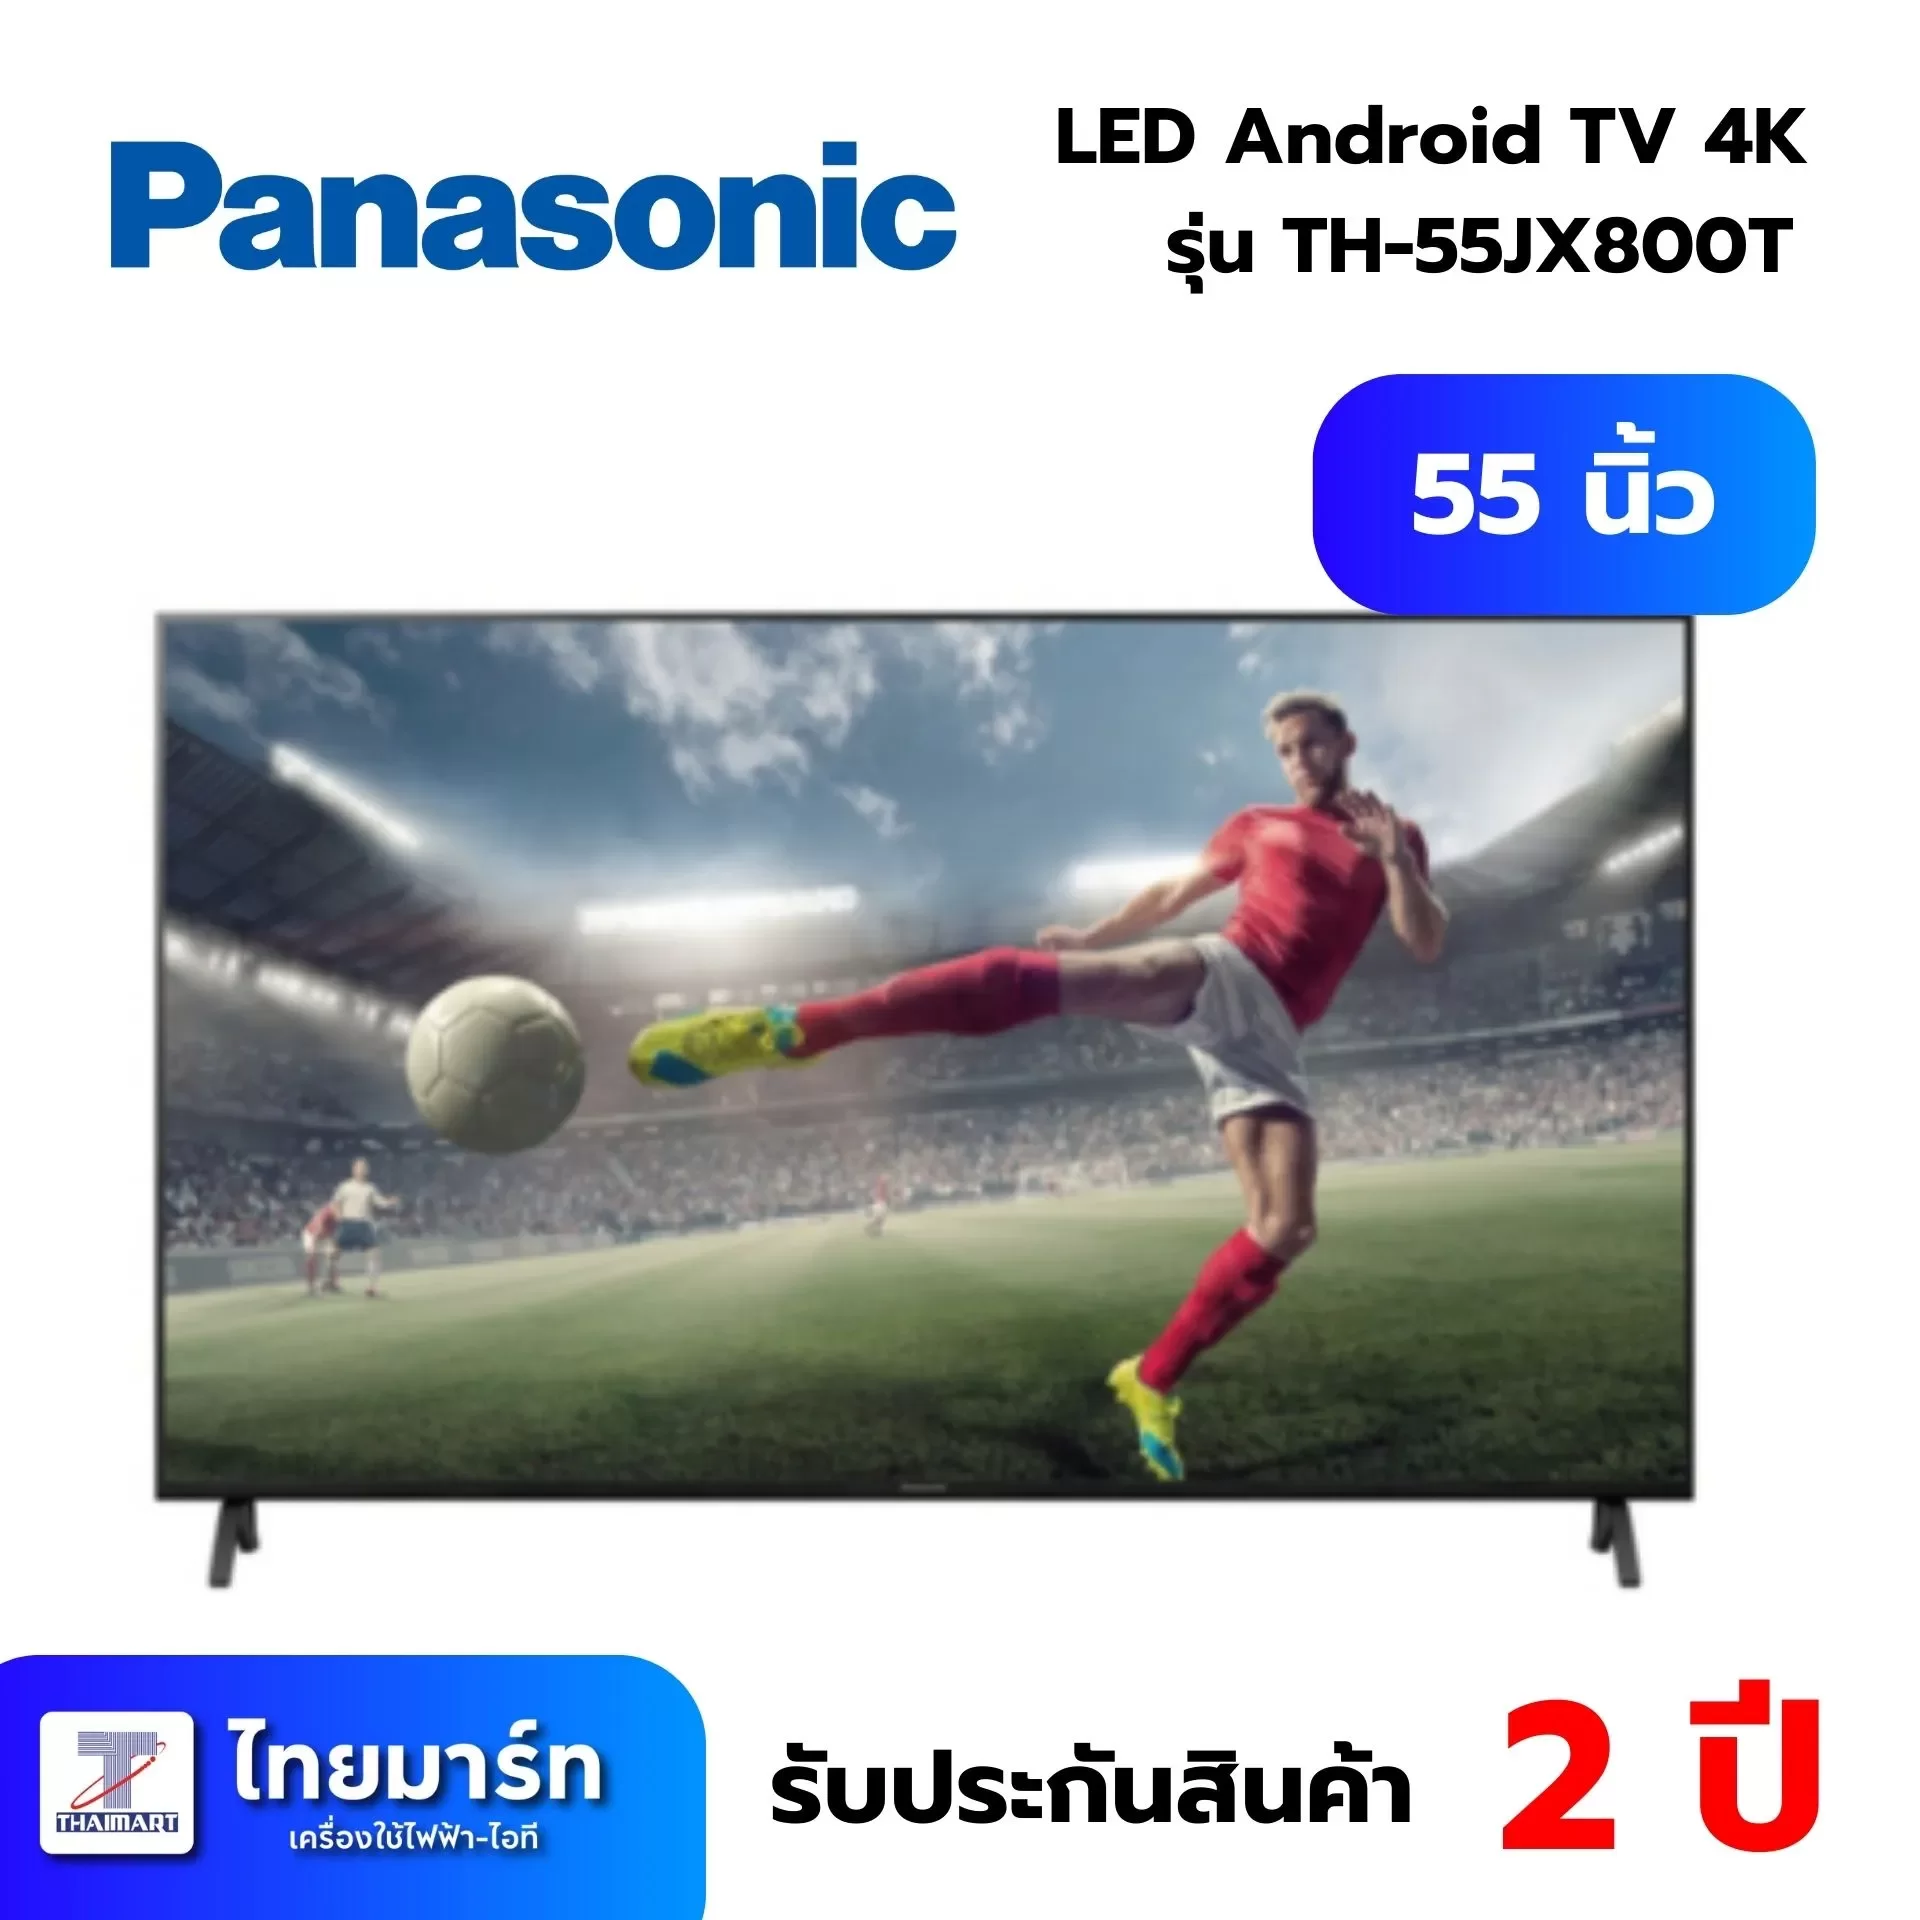 ทีวี PANASONIC LED Android TV 4K 55 นิ้ว รุ่น TH-55JX800T